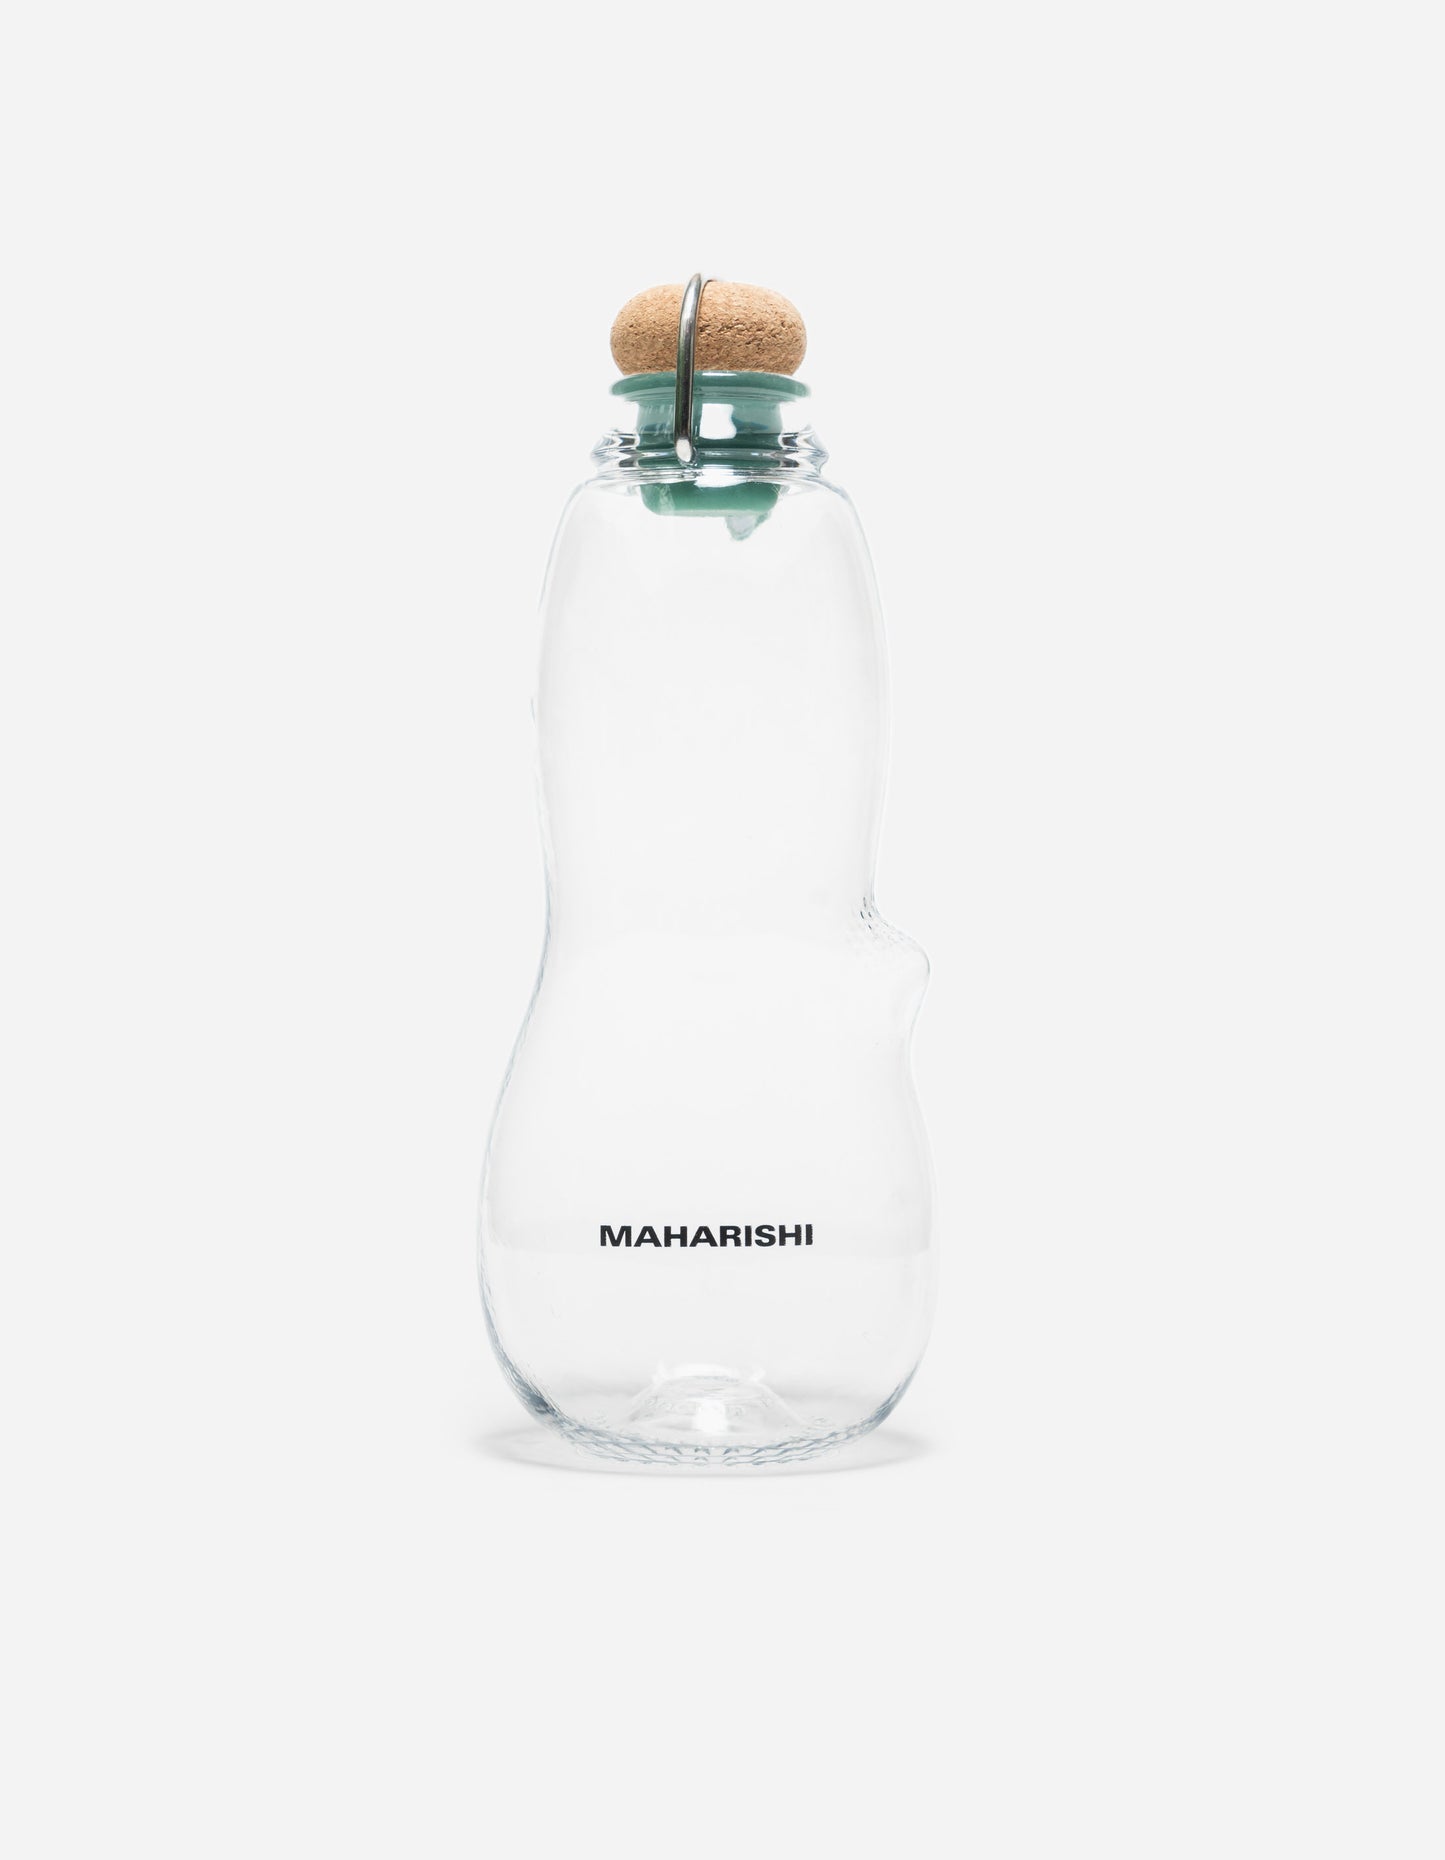 Maharishi x Black+Blum MILTYPE Water Bottle